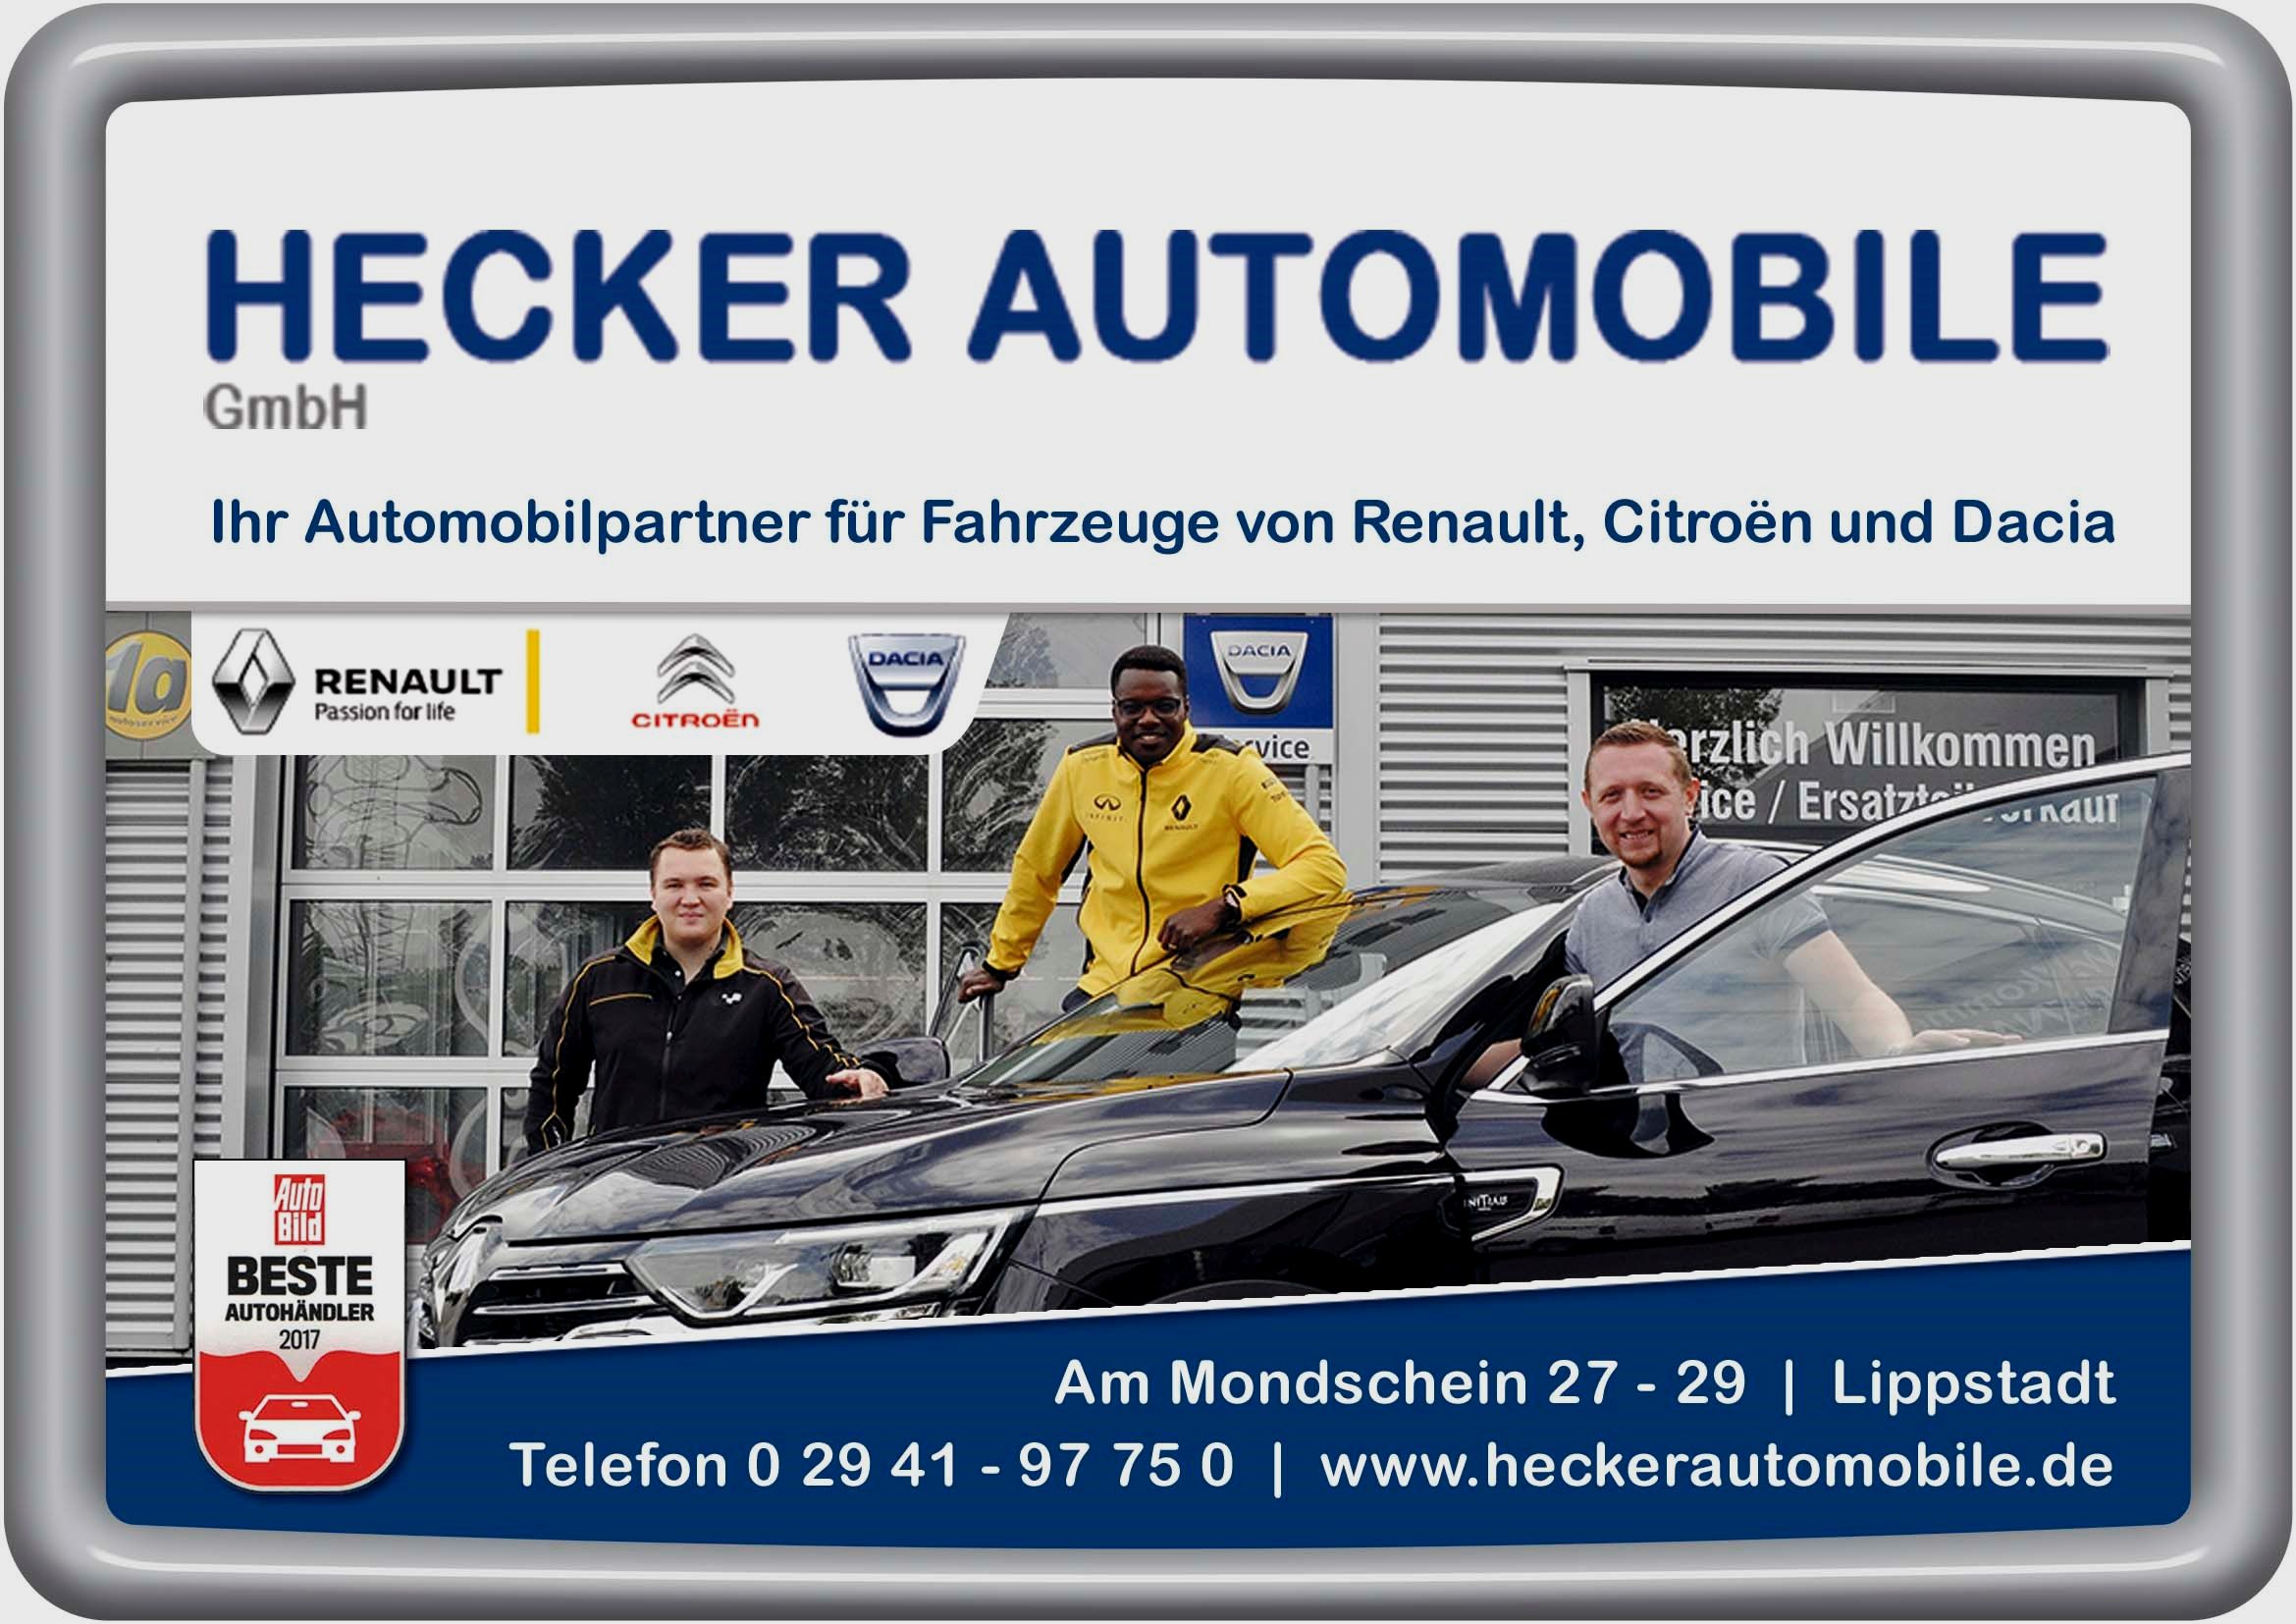 Hecker Automobile